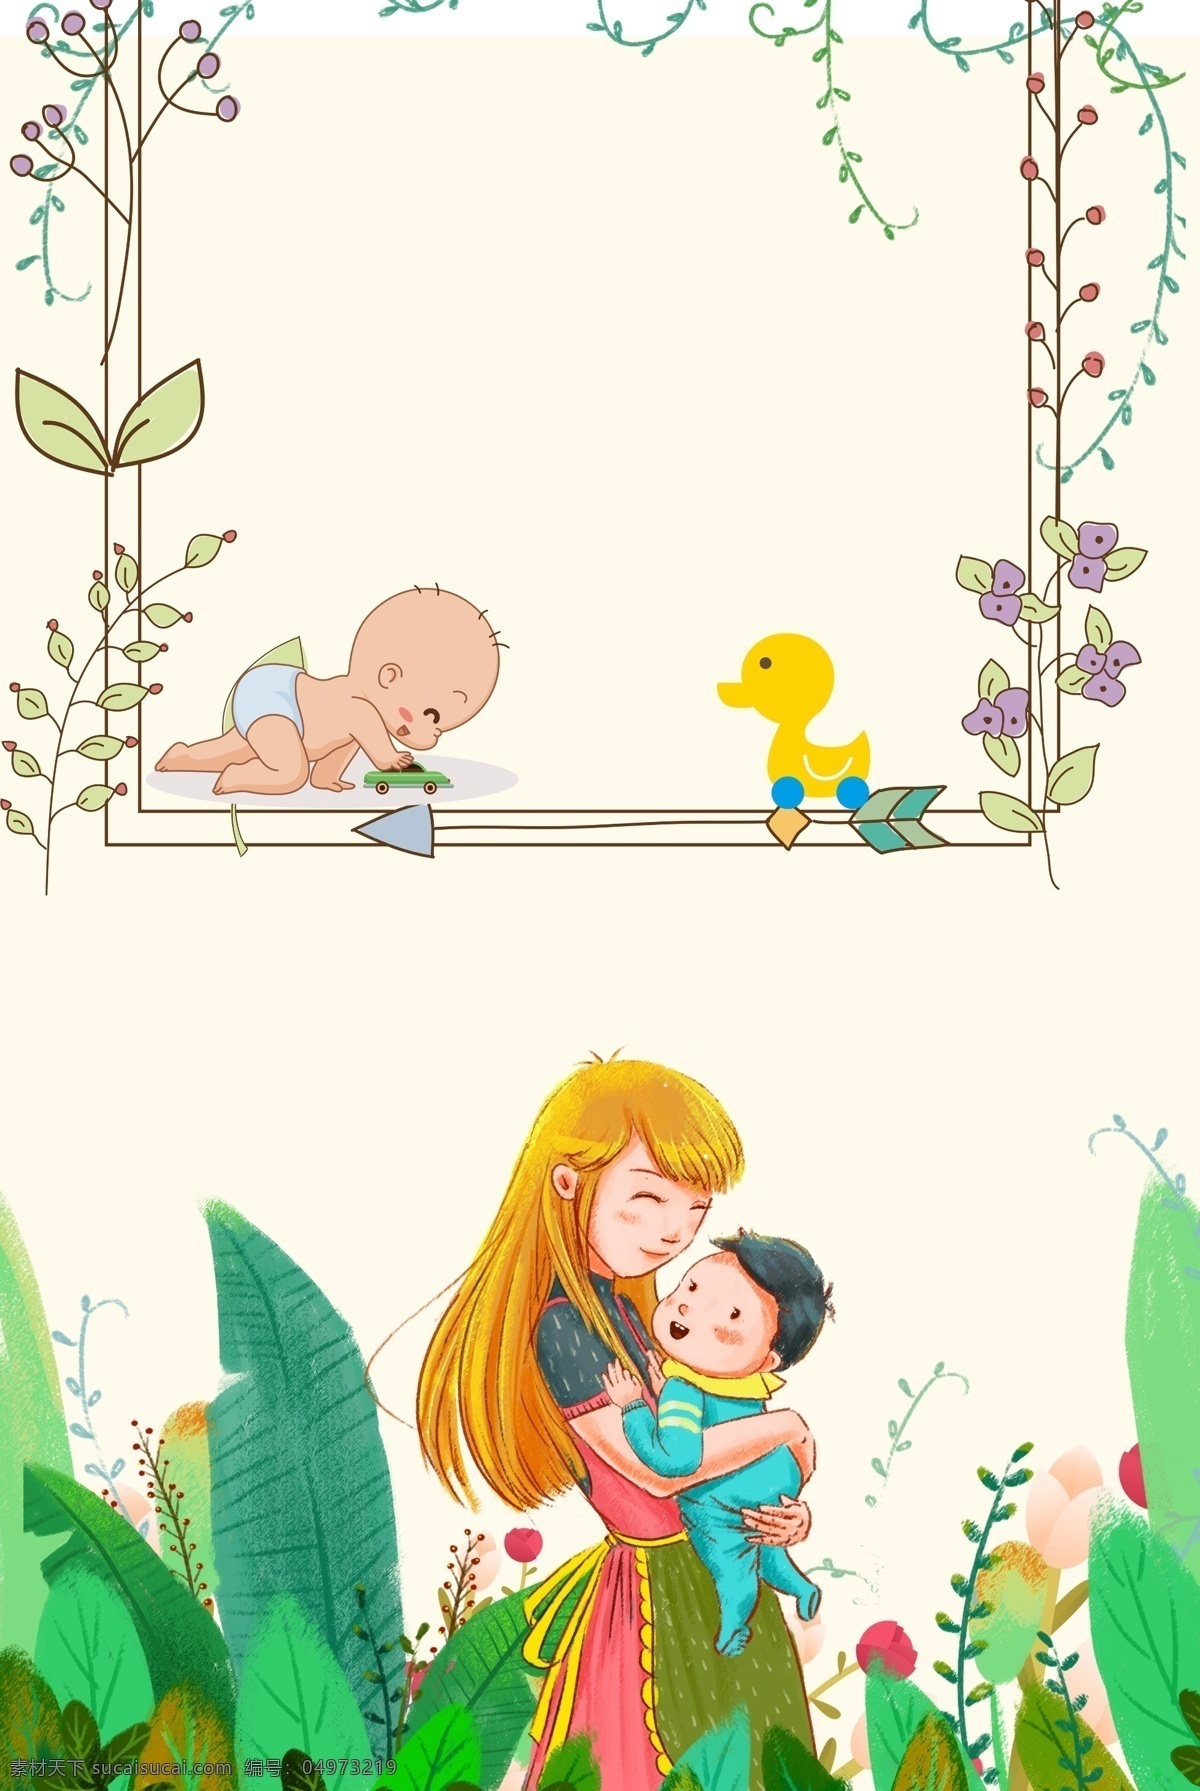 插画 卡通 母婴 用品 促销 海报 背景 清新 绿色 儿童 插画风 母婴促销 促销海报 手绘 婴儿用品